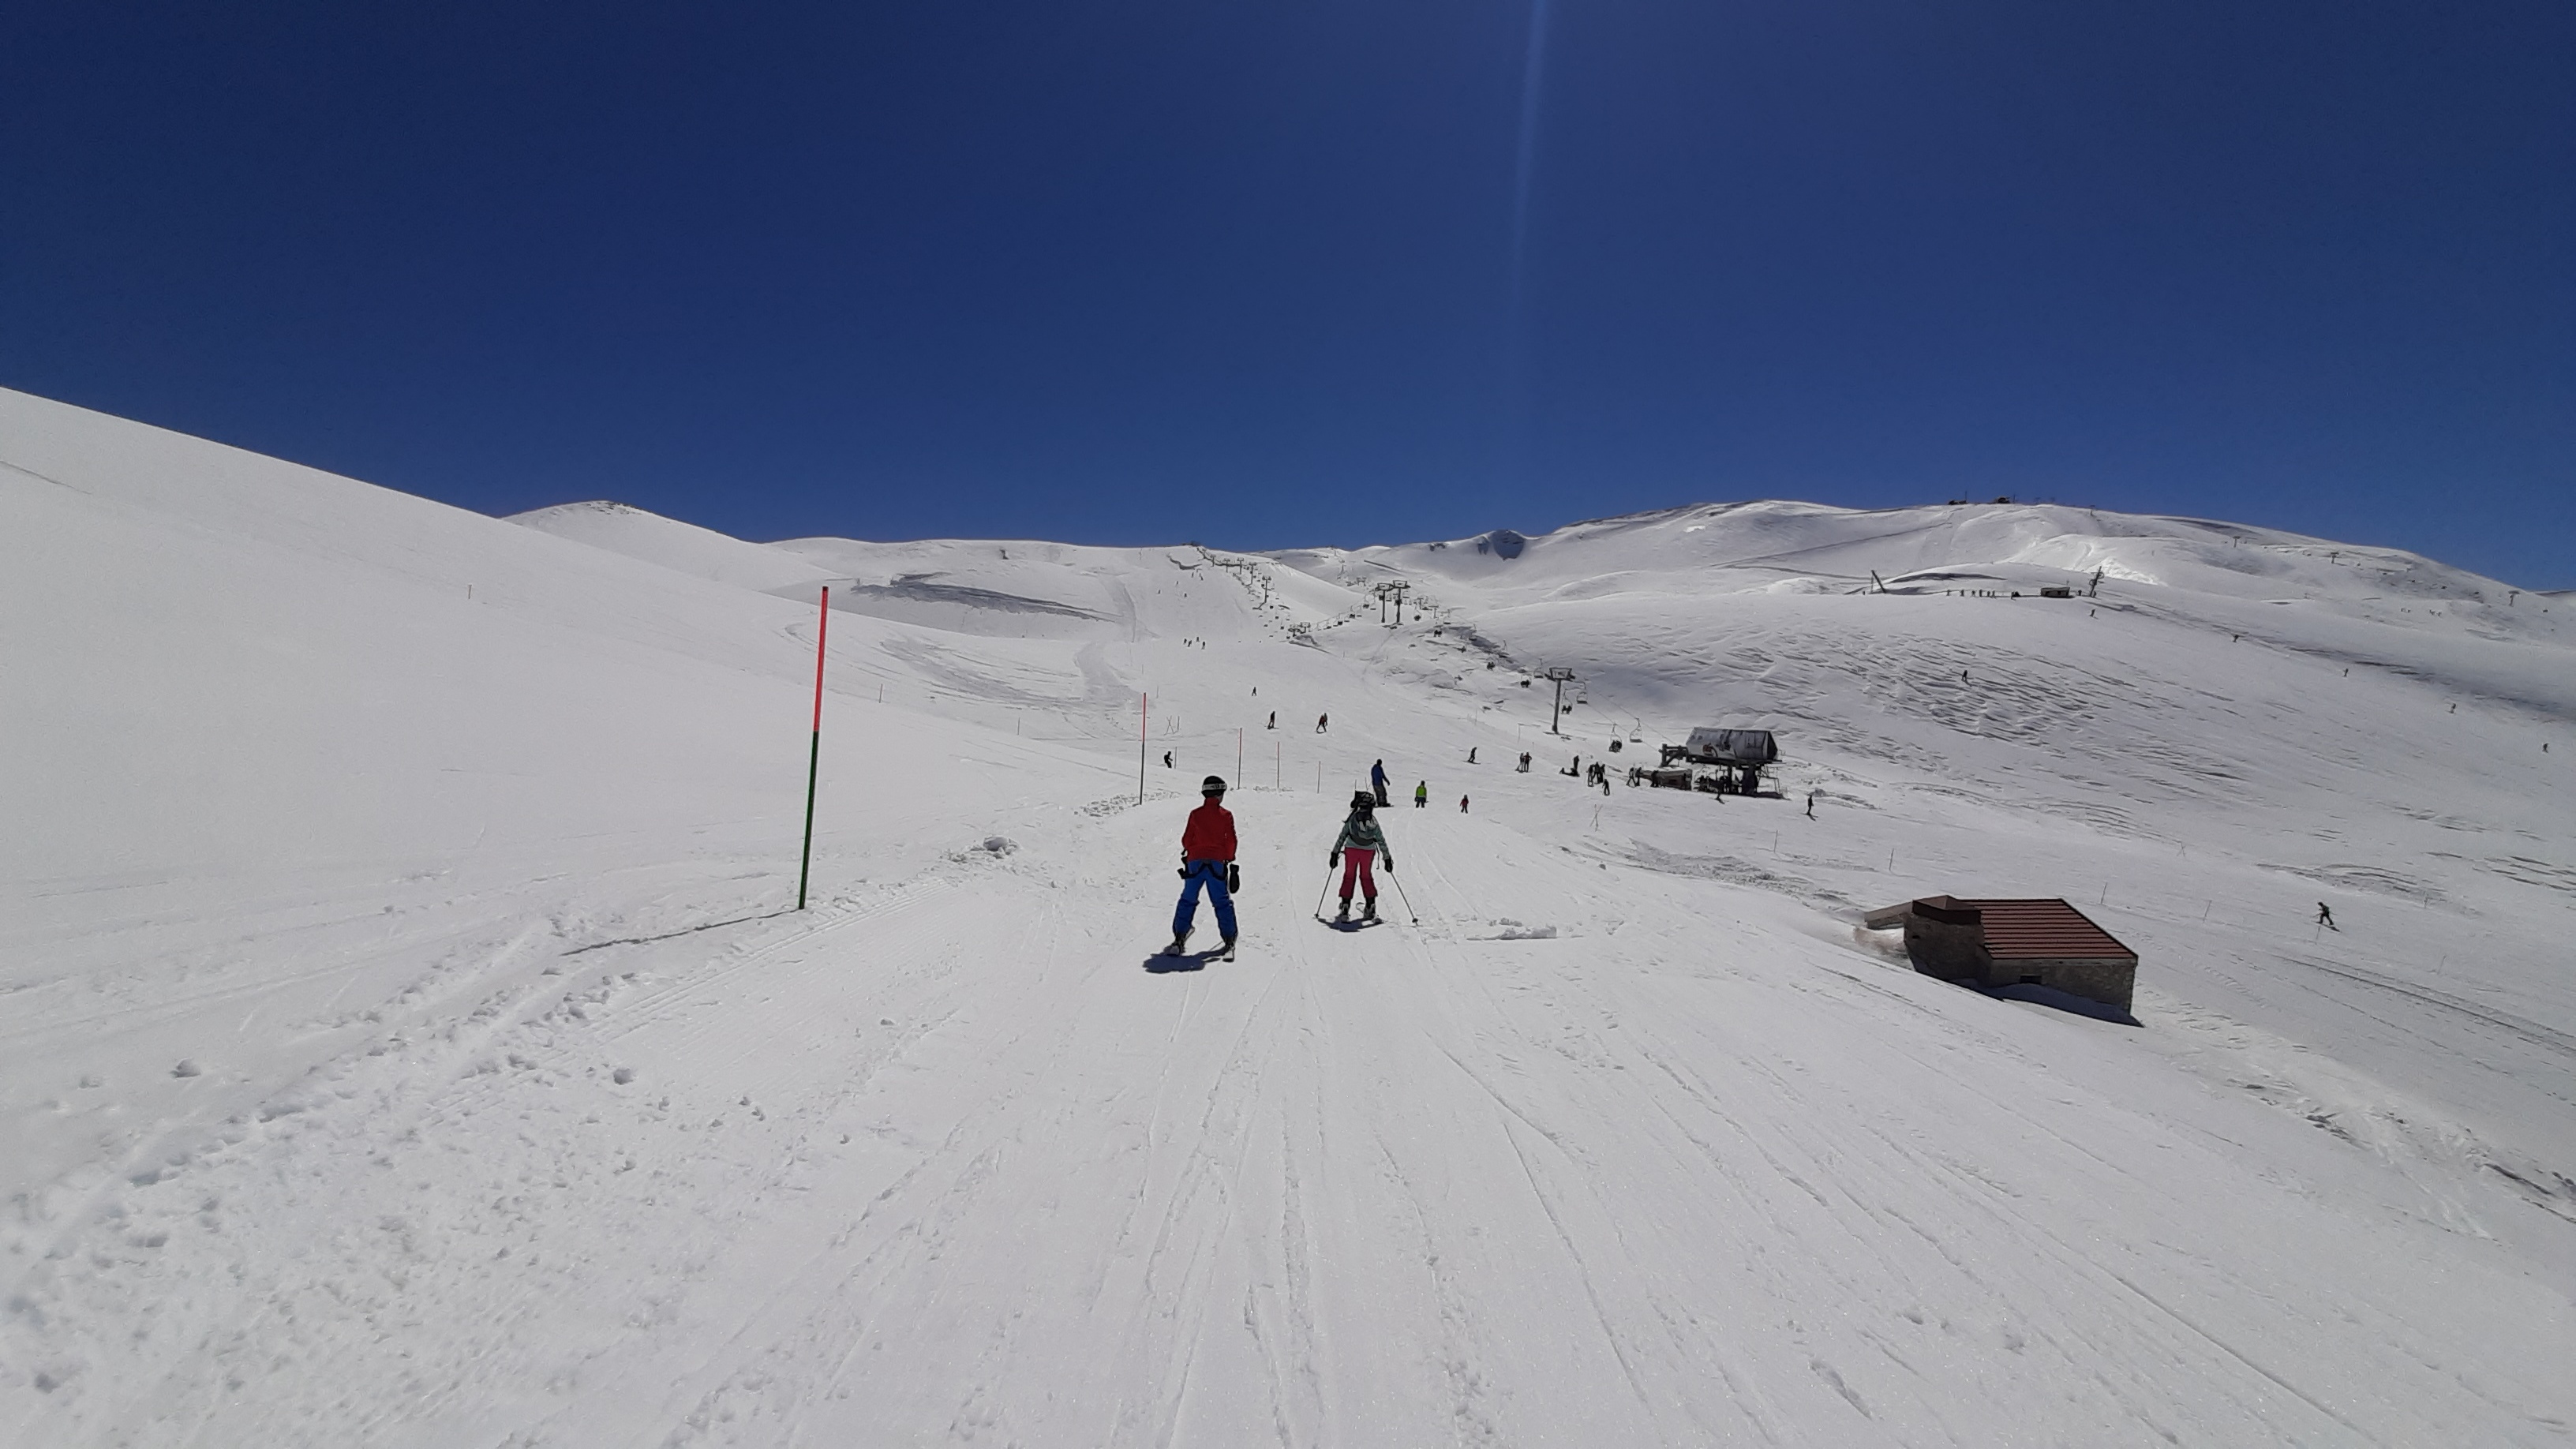 Piste renard, Mzaar Ski Resort